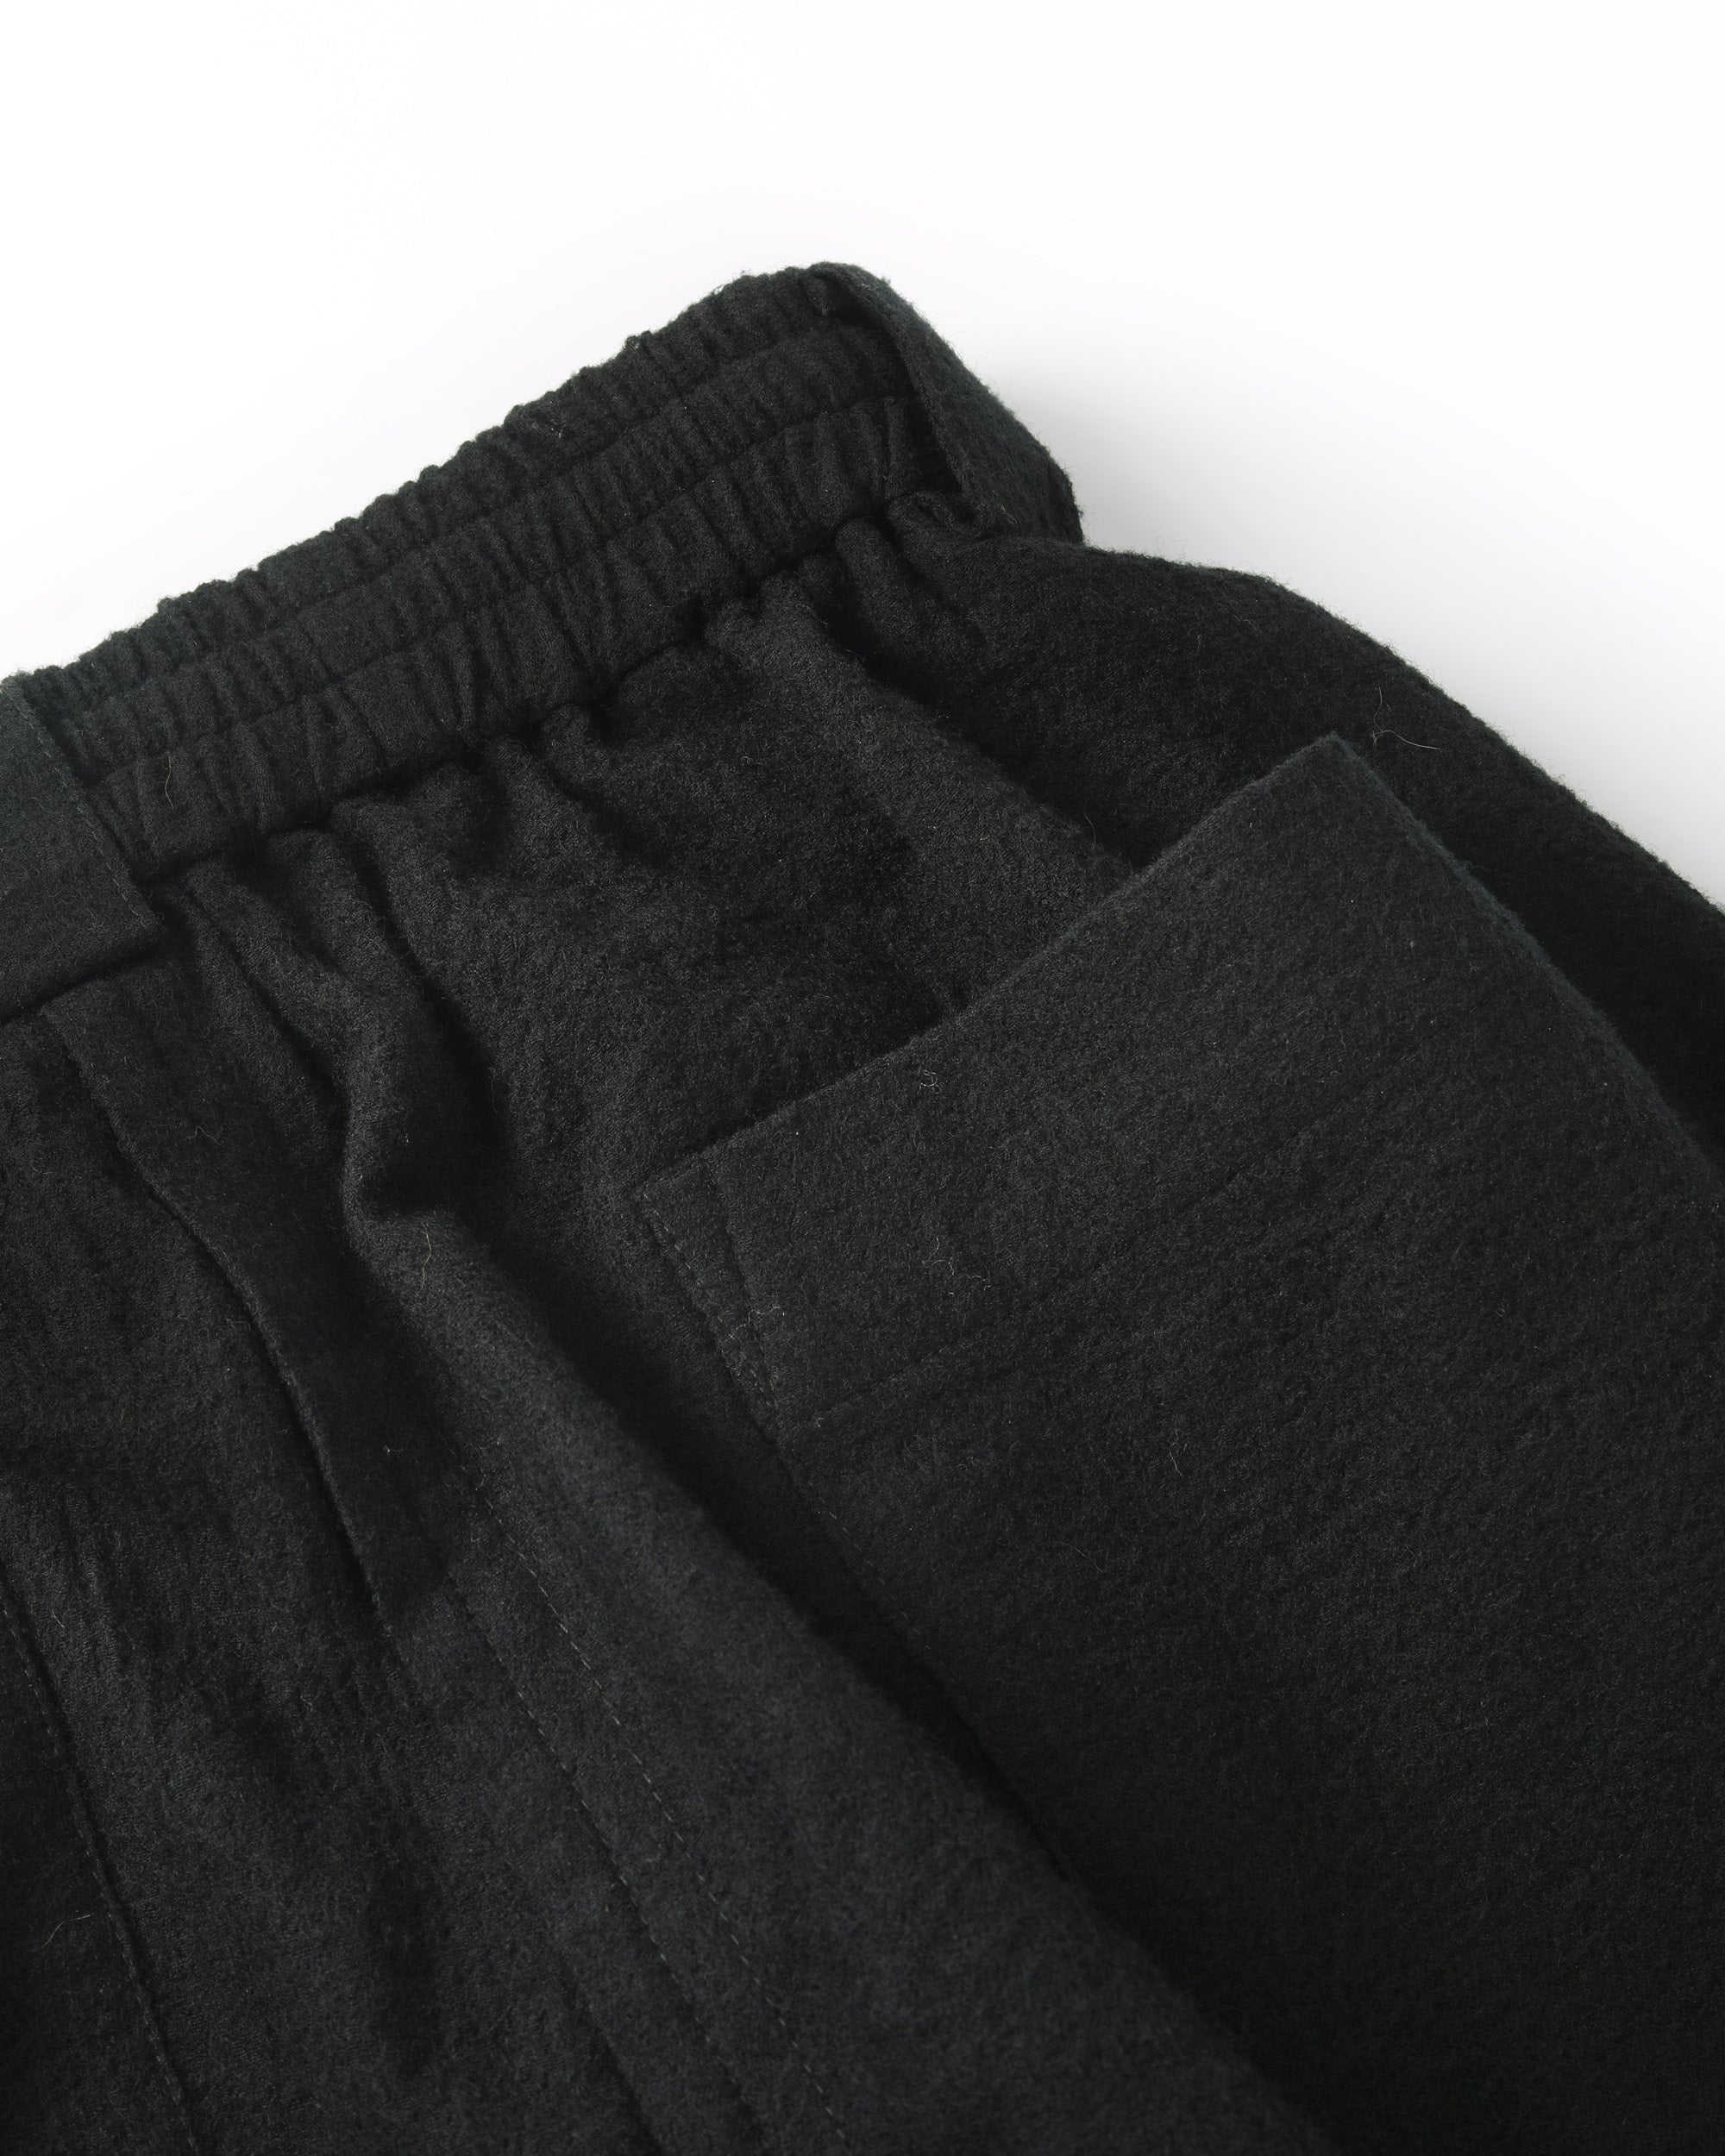 ROSEN Plato Trousers in Wool Cotton Gauze